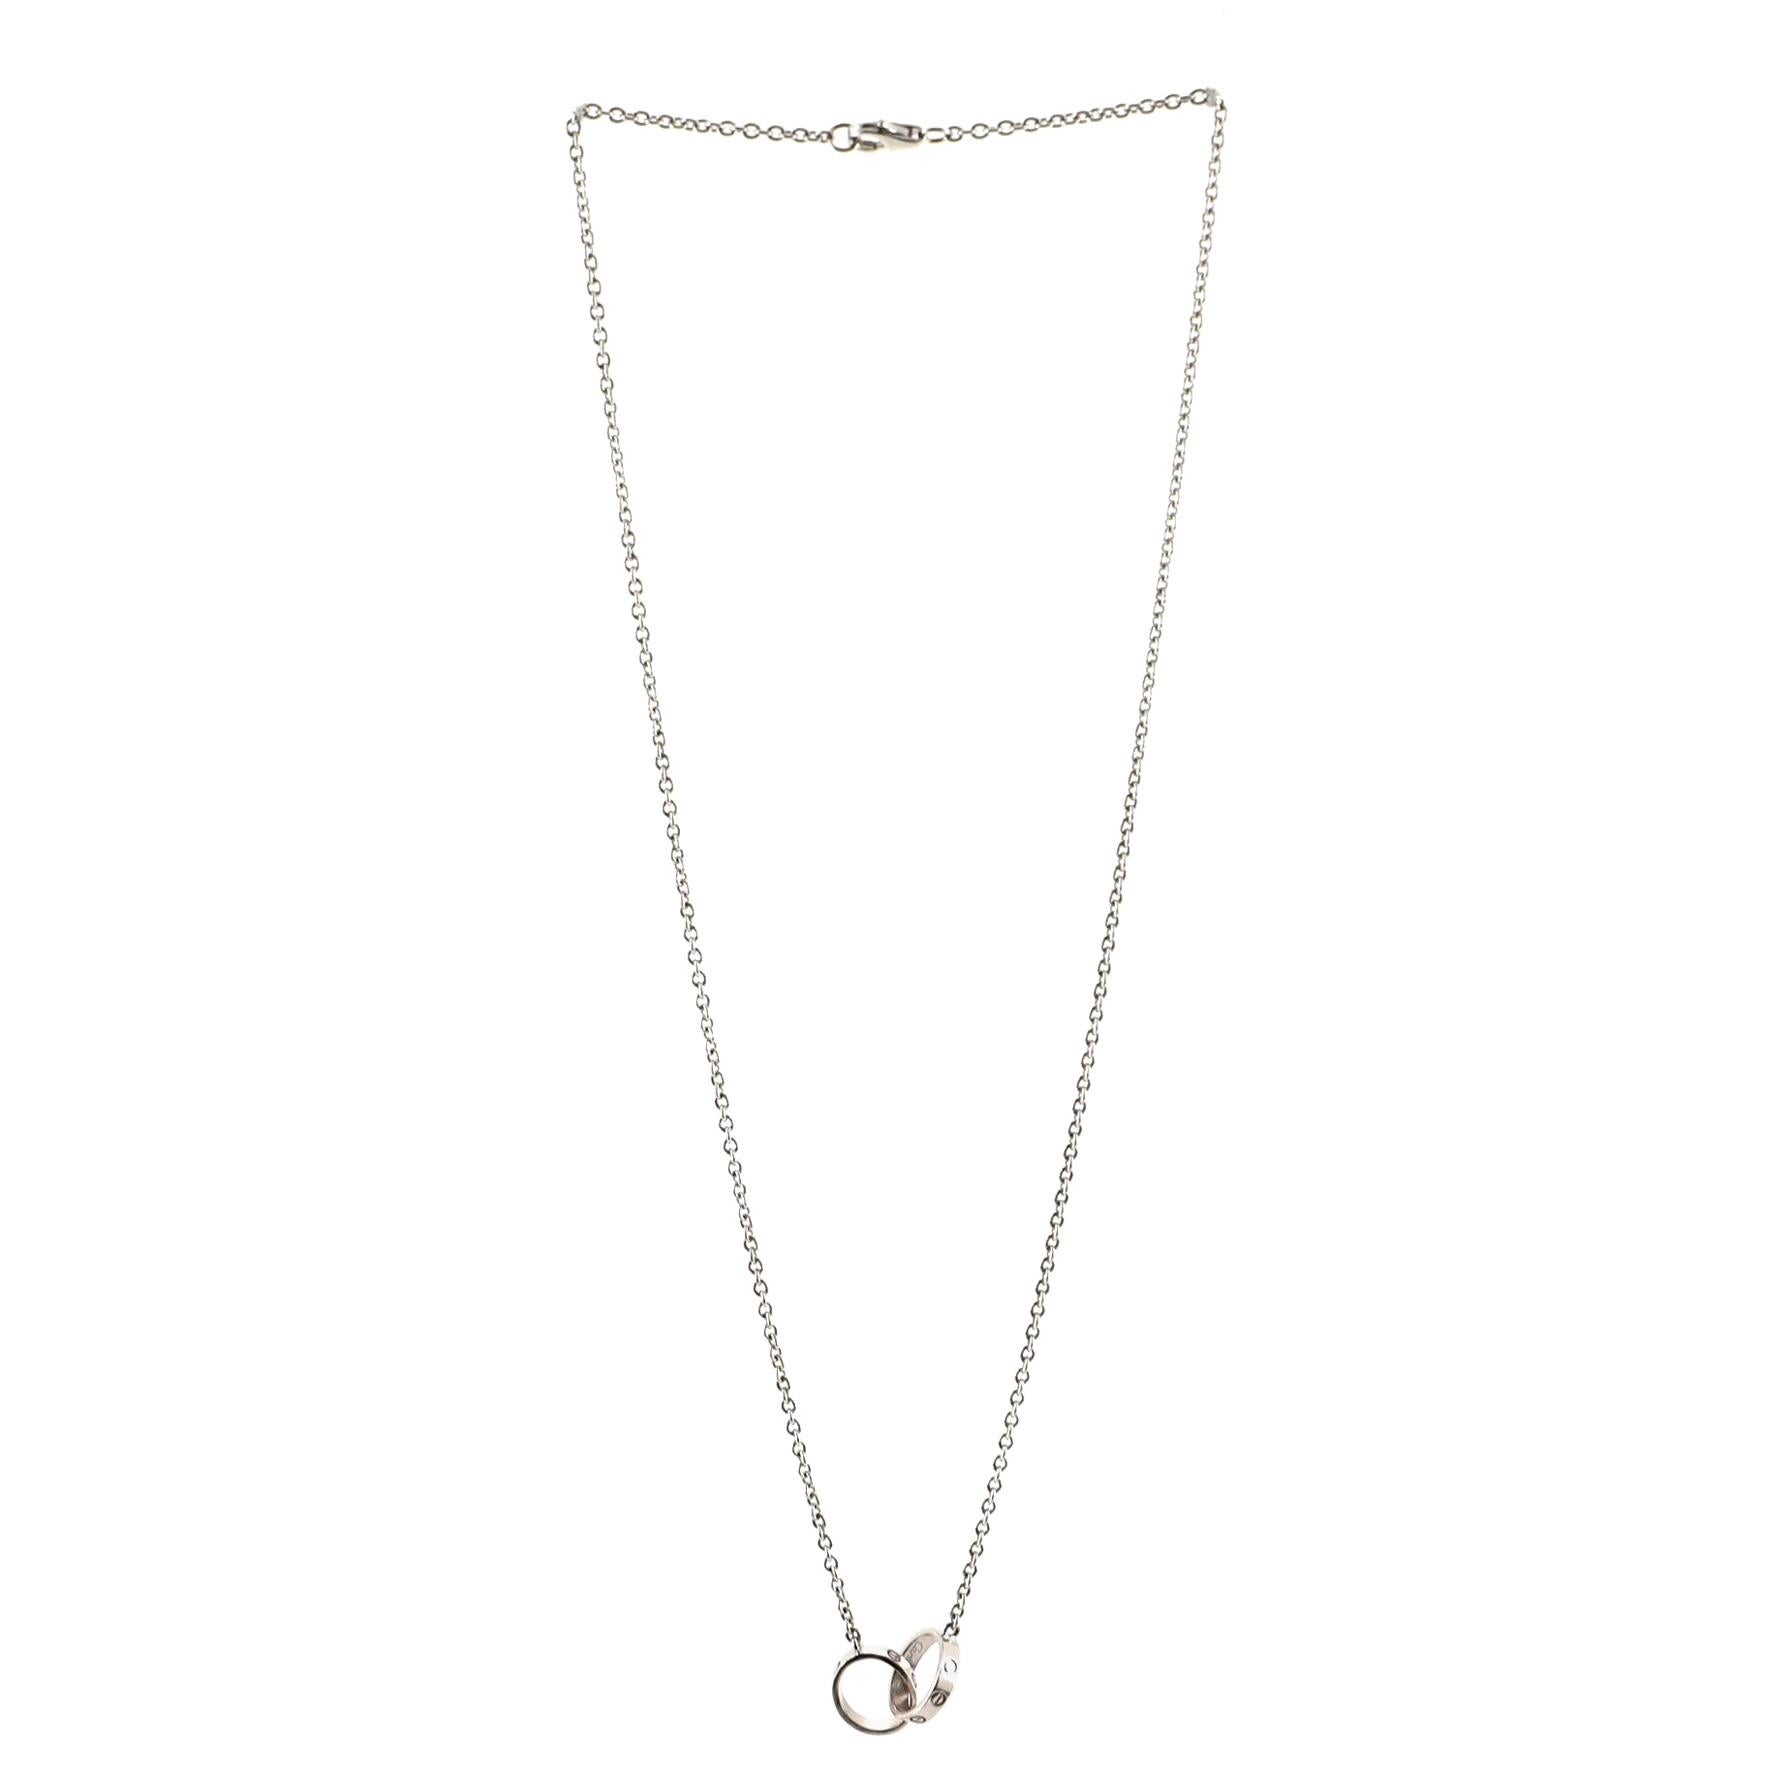 Cartier Love Interlocking Necklace 18 Karat White Gold